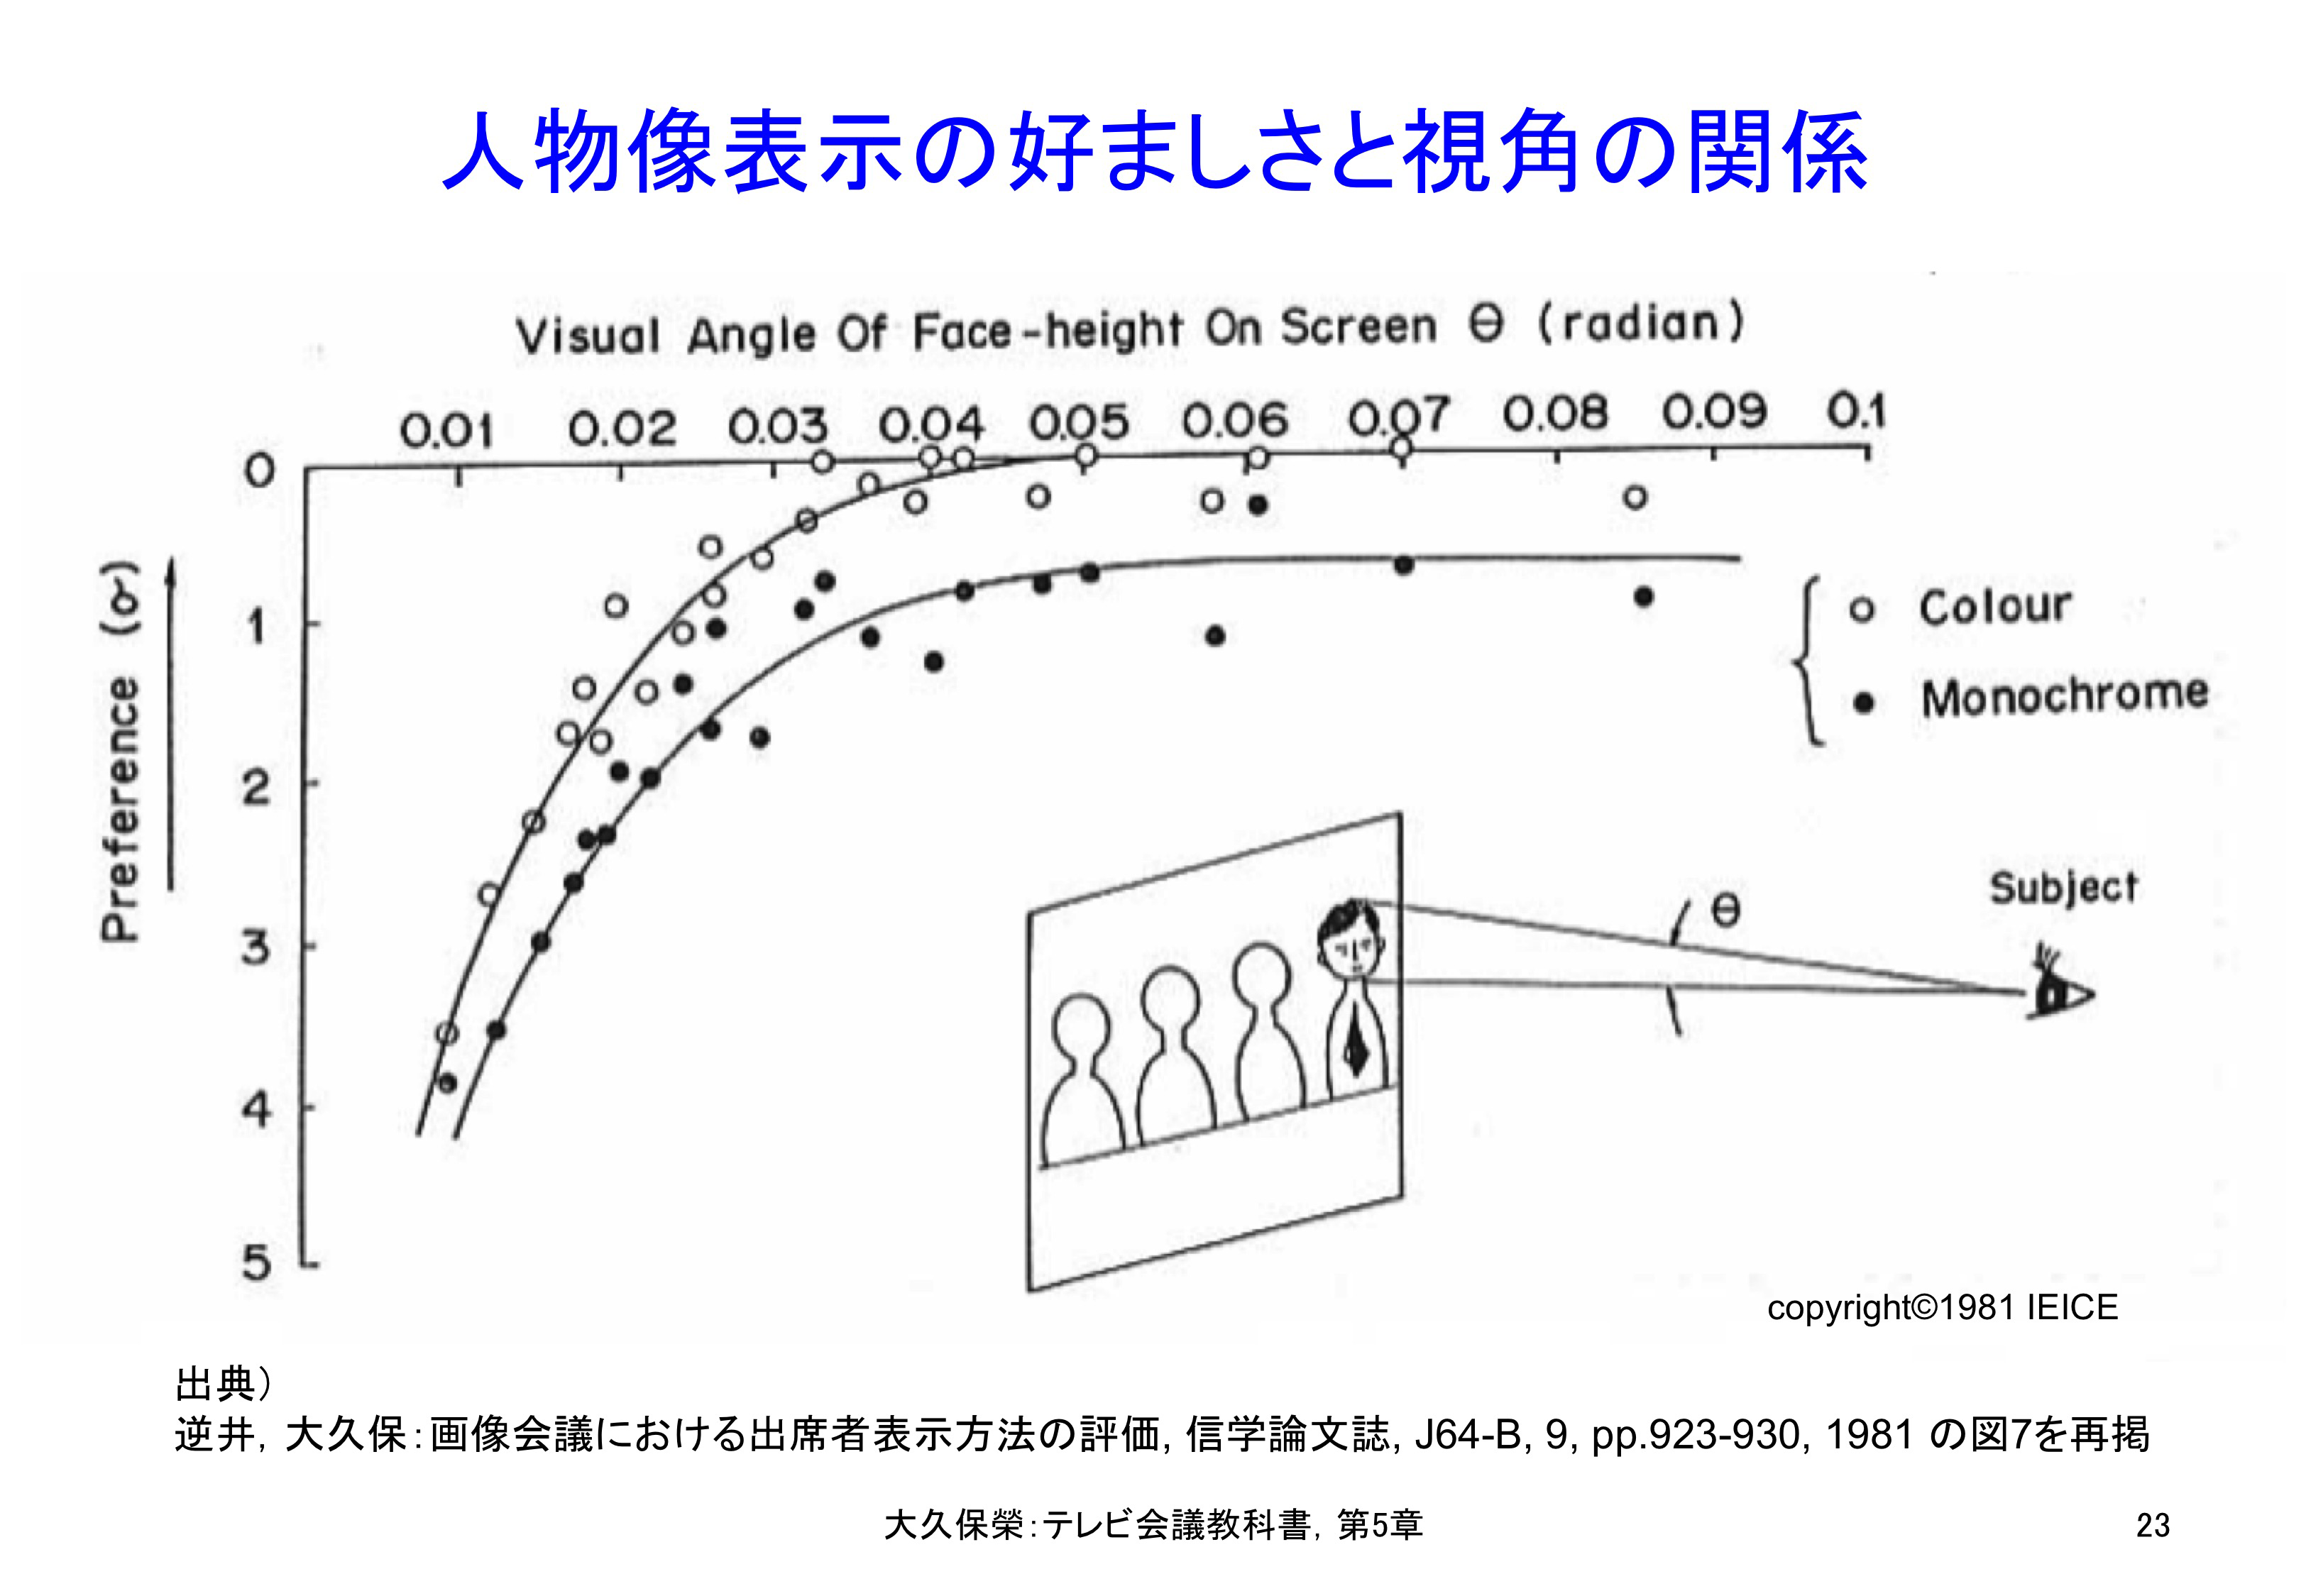 図5-23 人物像表示の好ましさと視角の関係